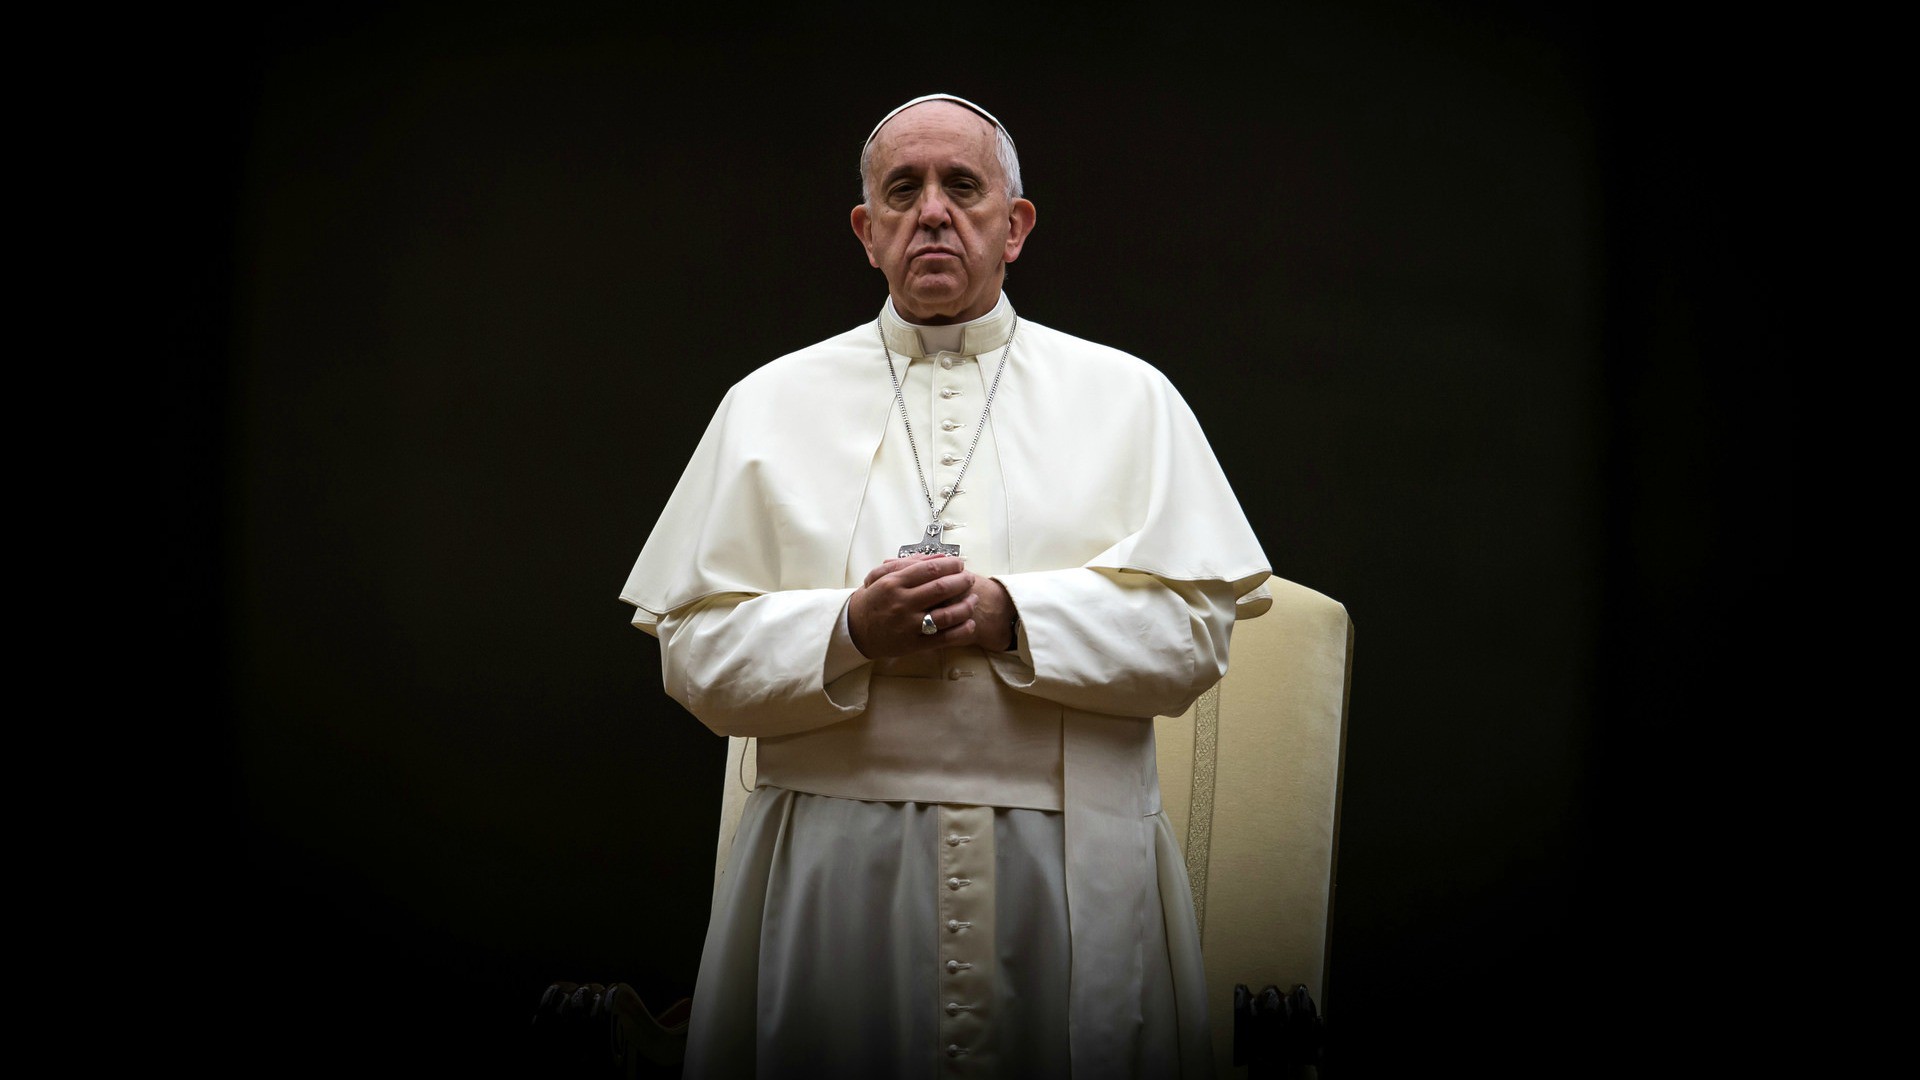 Le pape François a prié pour le victimes de la maternité de Mexico (Photo: Catholic Church England/Flickr/CC BY-NC-SA 2.0)